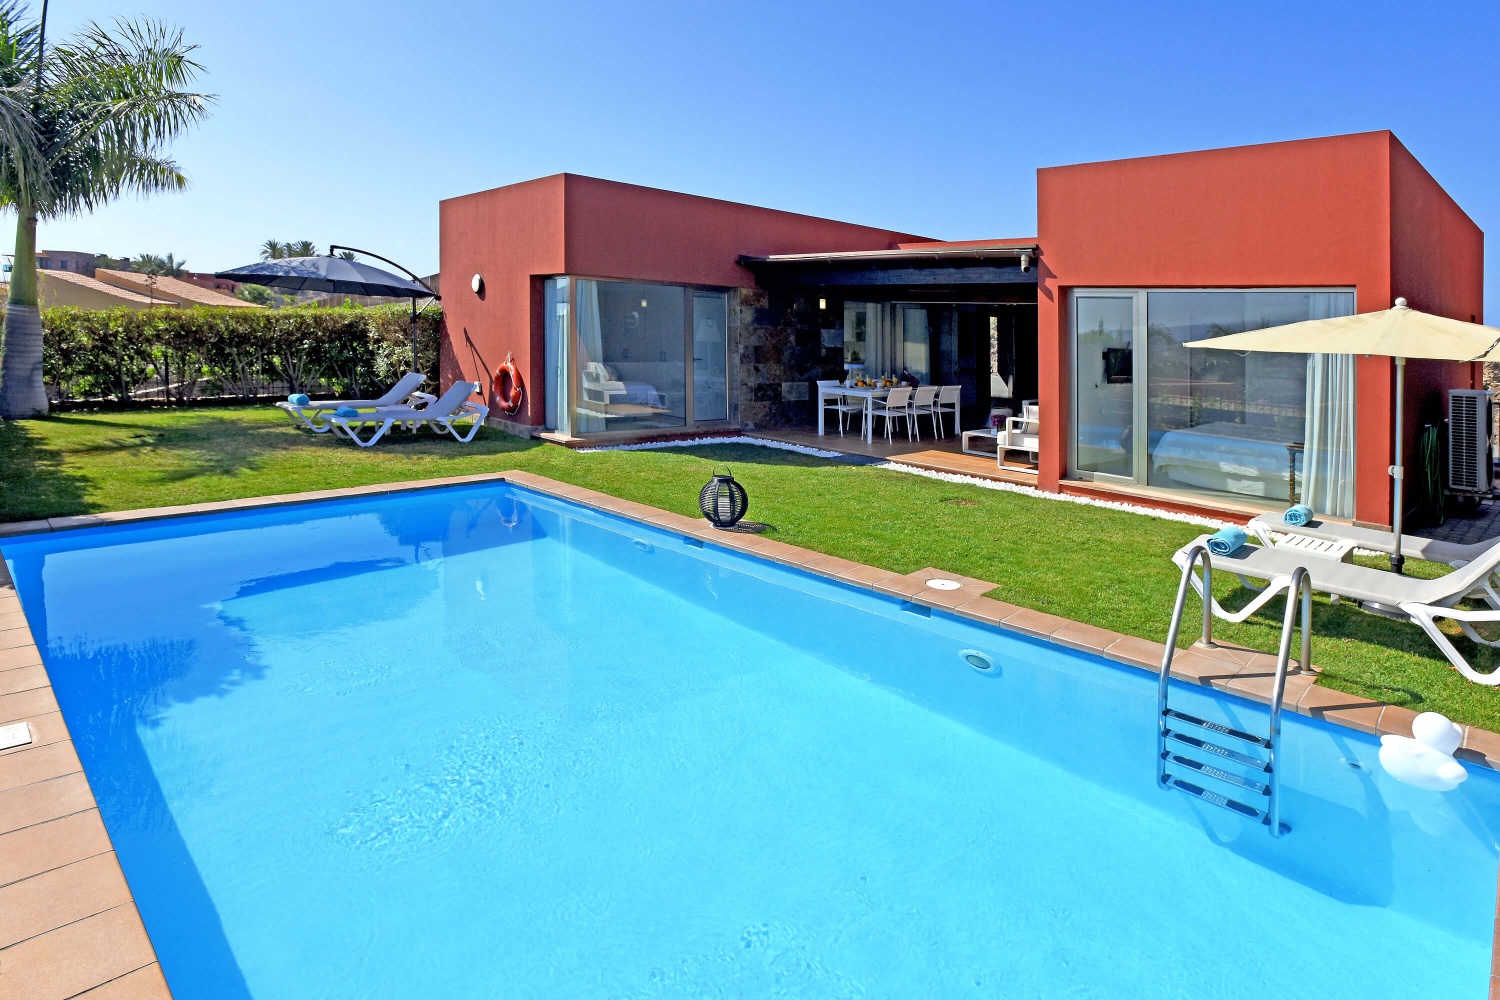 Volledig nieuwe en modern ingerichte bungalow met prachtig buitenterras, groot zwembad en prachtig uitzicht op golfbaan en landschap